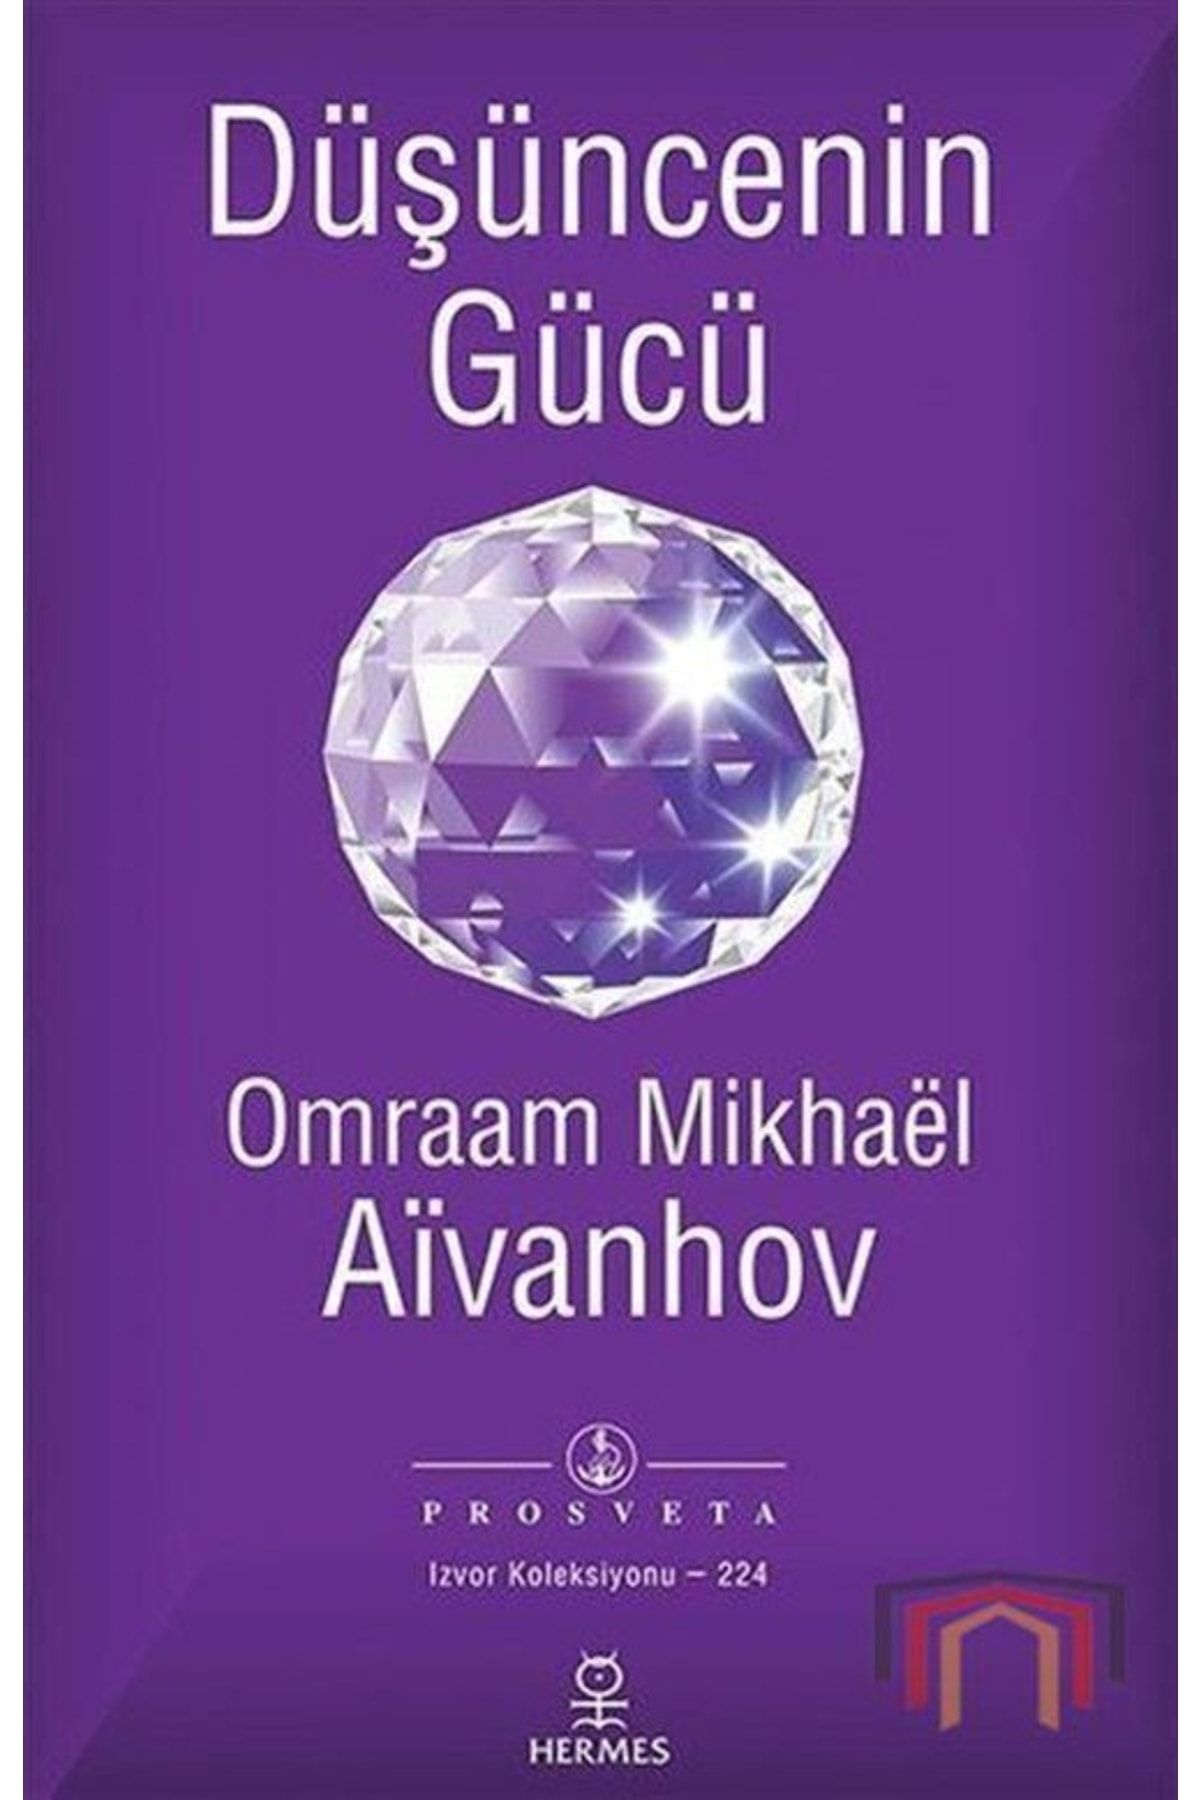 Hermes Yayınları Düşüncenin Gücü - Omraam Mikhael Aivanhov 9789756130803